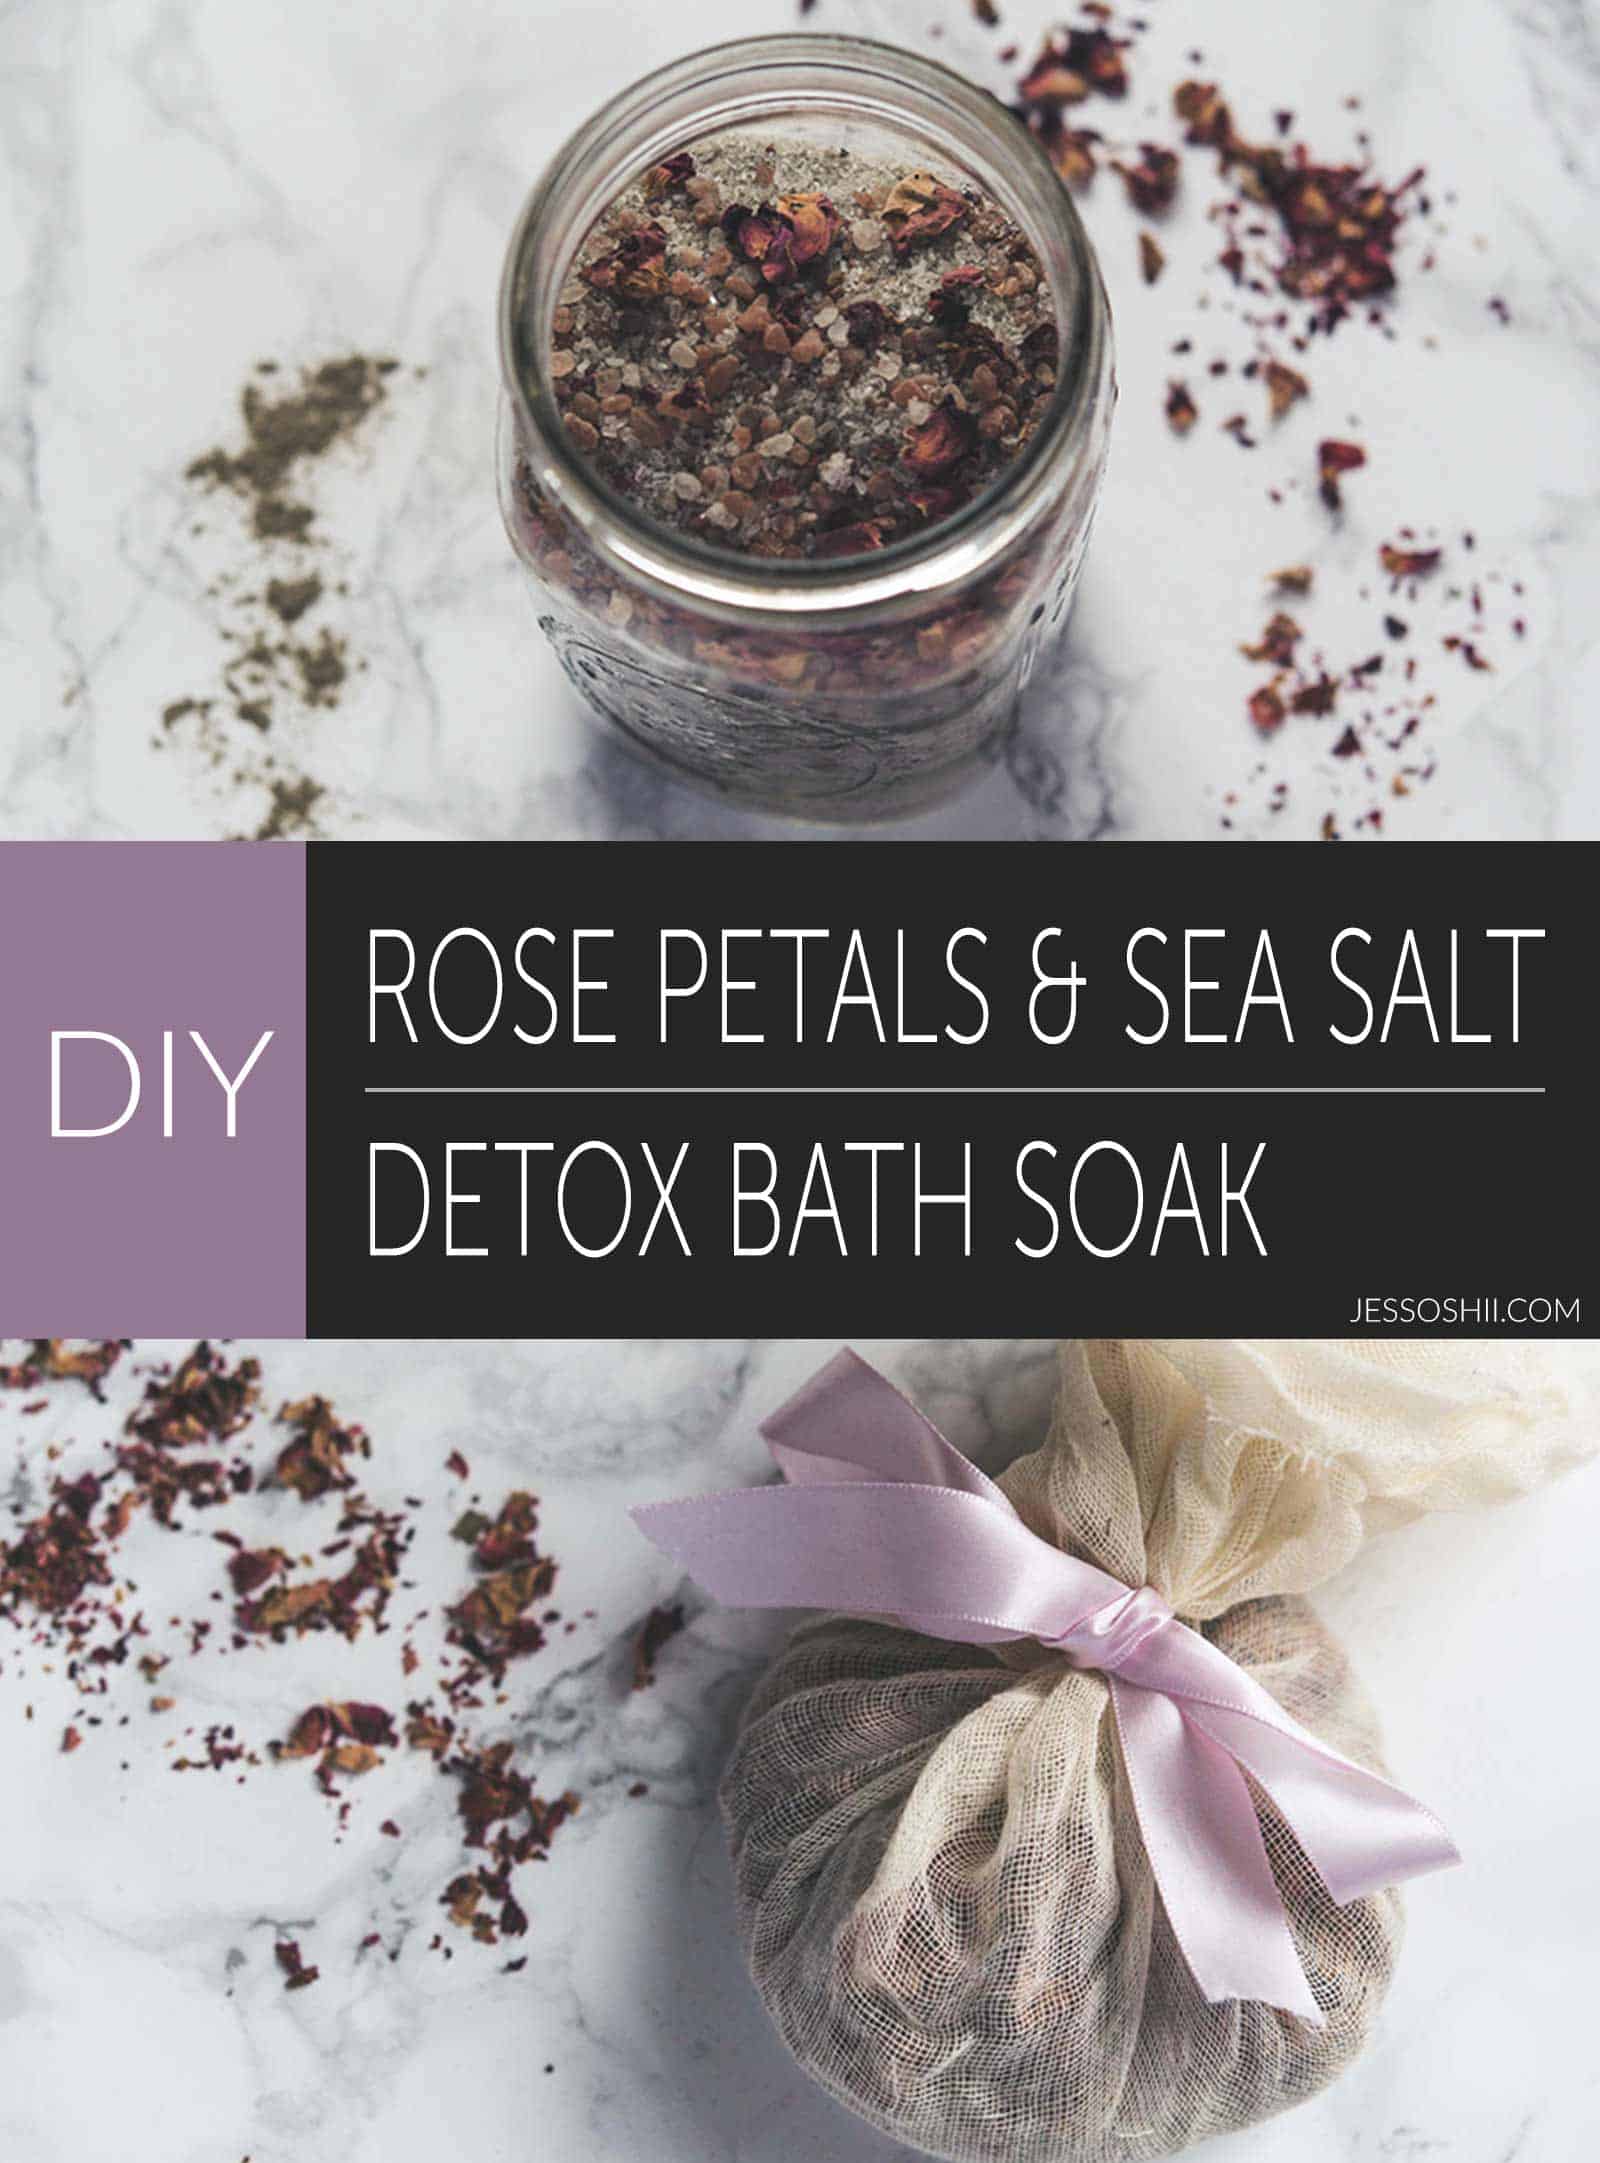 Diy rose petals sea salt detox bath soak tutorial